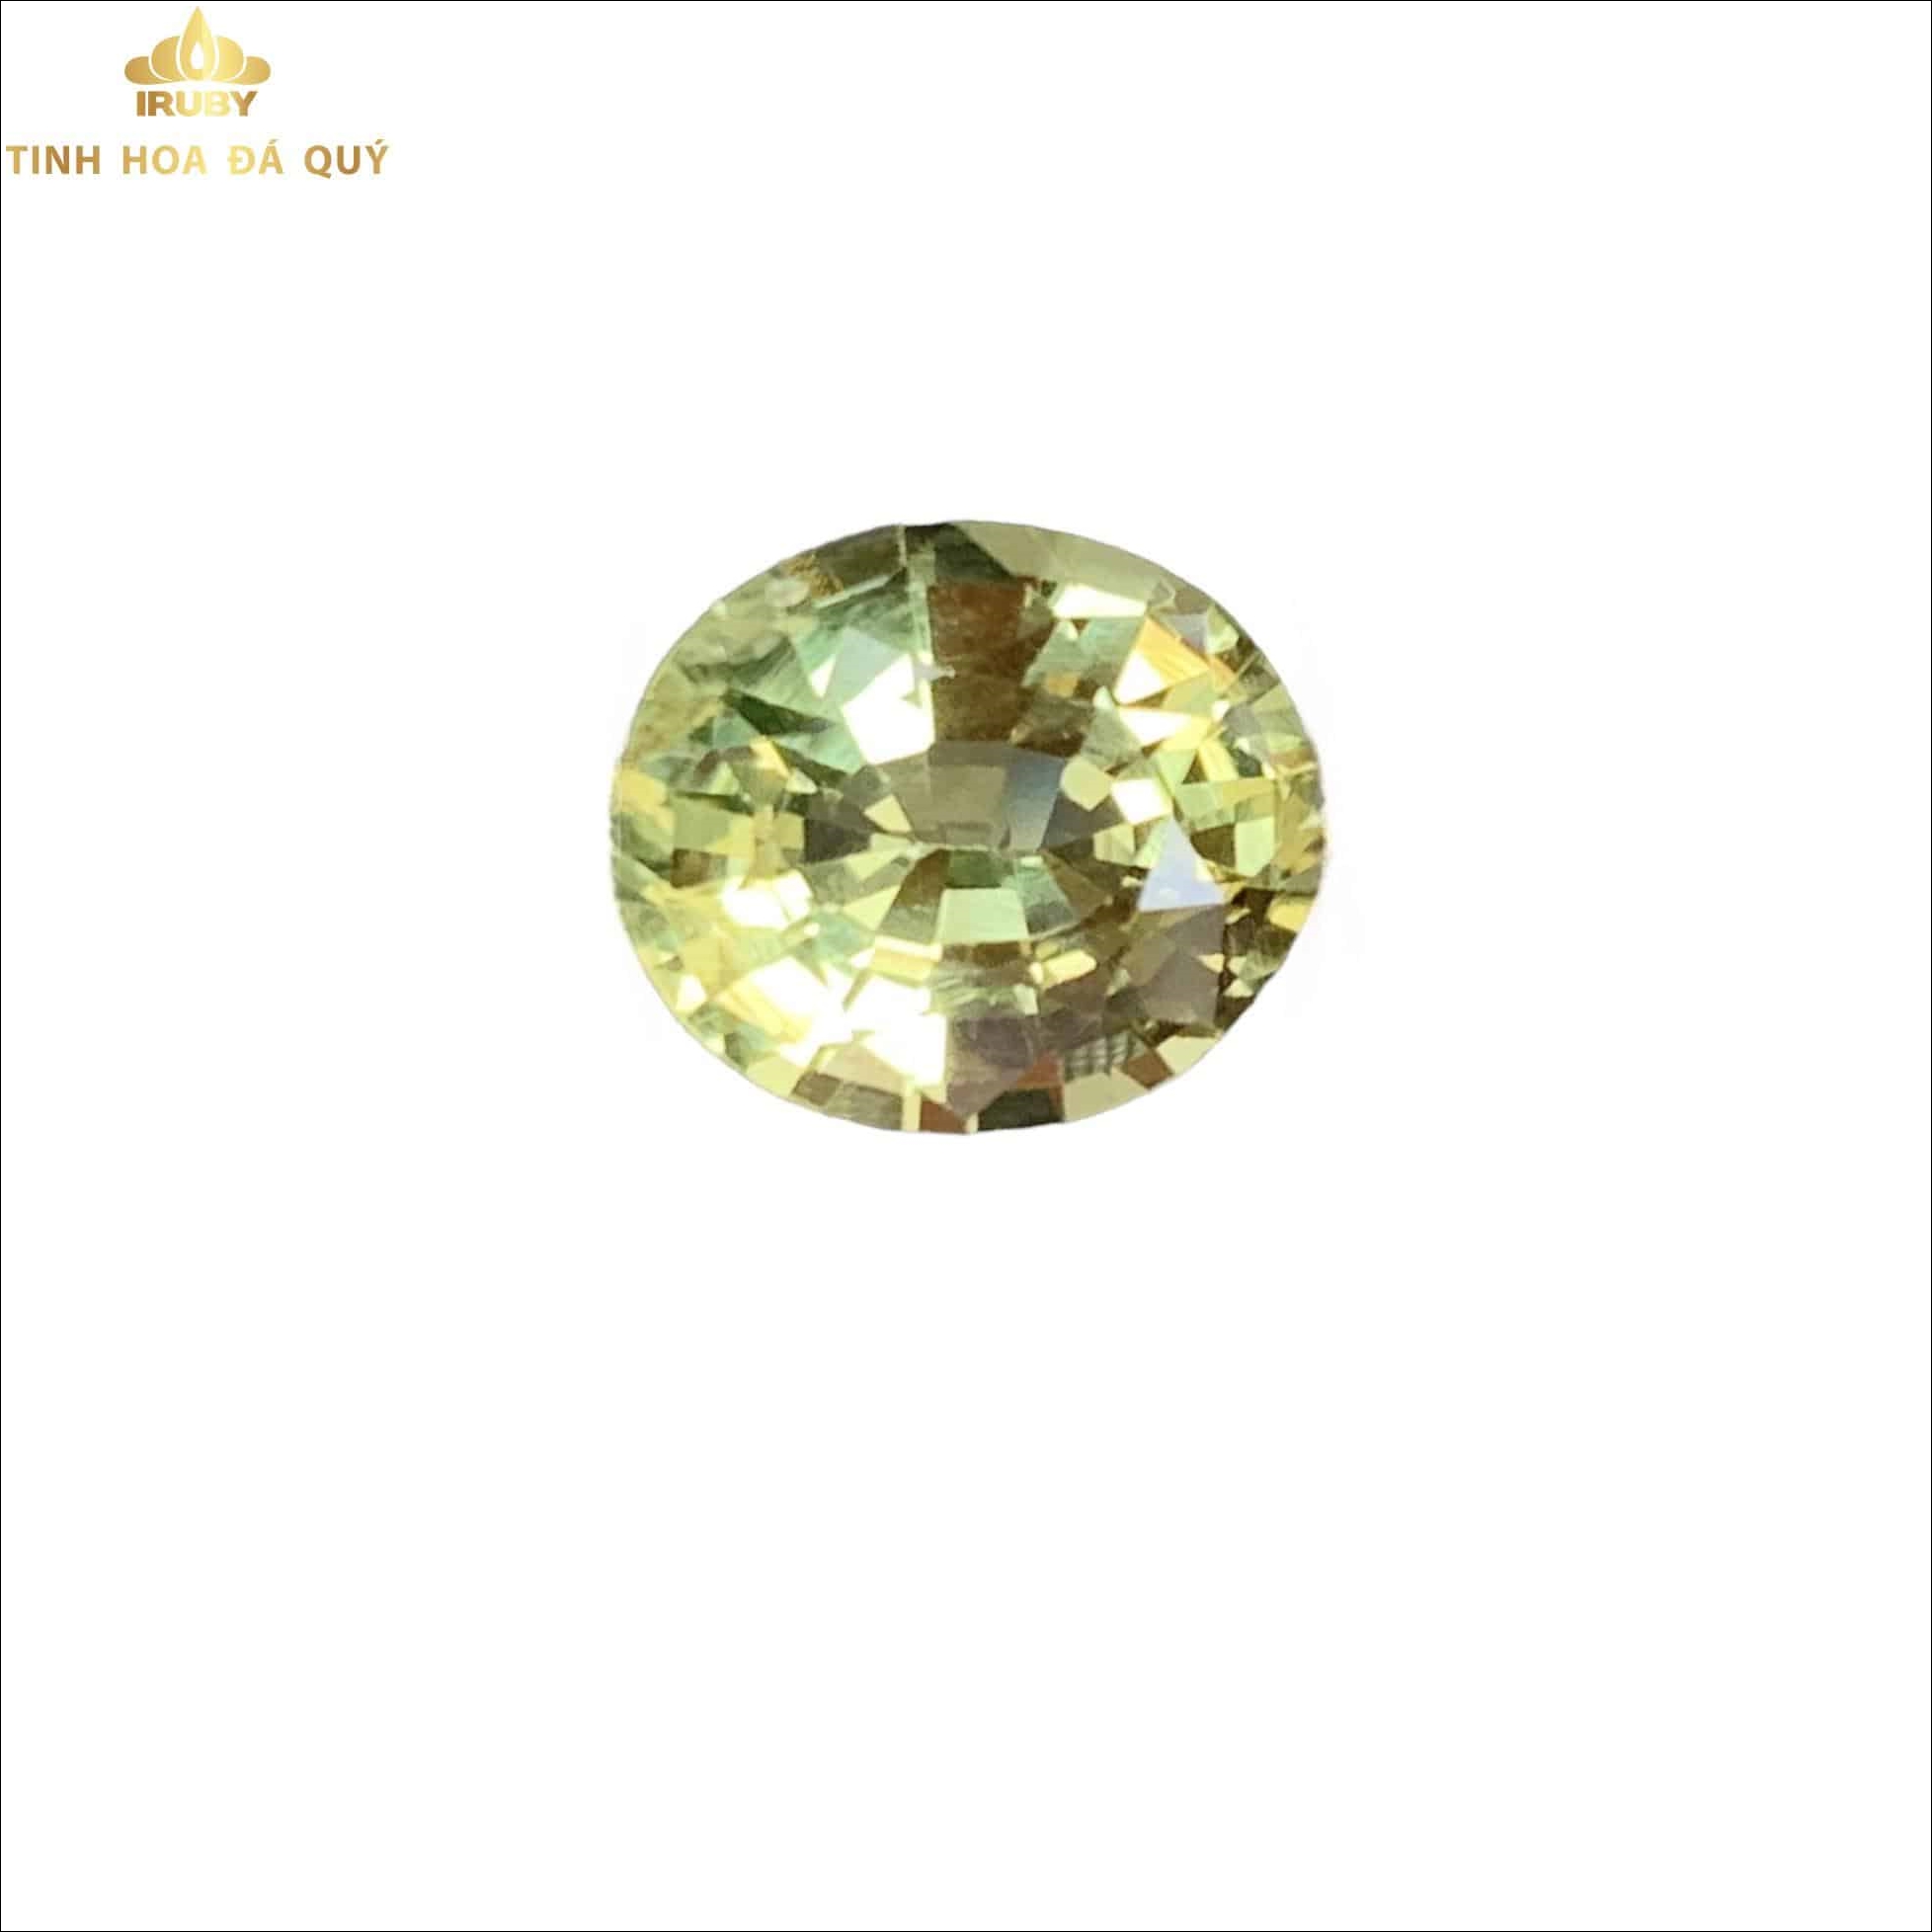 Viên Beryl vàng chanh đẹp tự nhiên - IRBL 221139